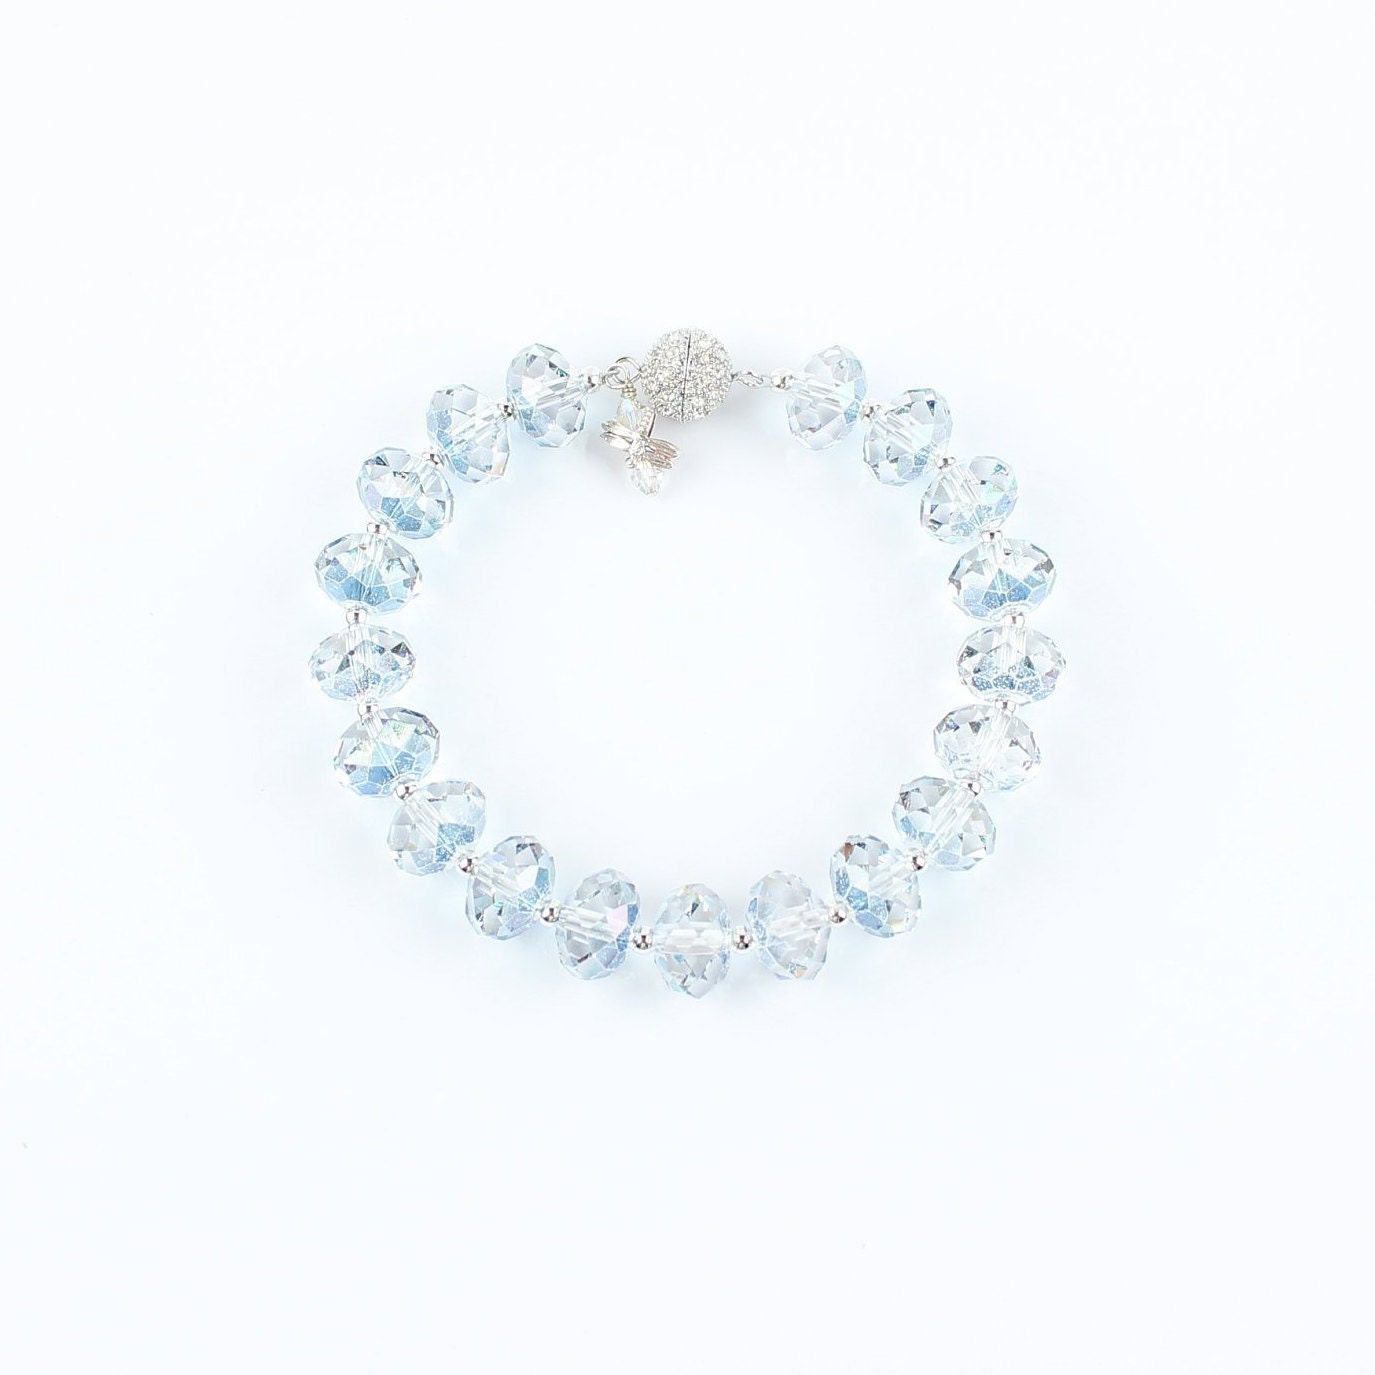 B7104 Swarovski Elements Crystal Ball  Chain Rhodium Plated Bracelet   Cerijewelry